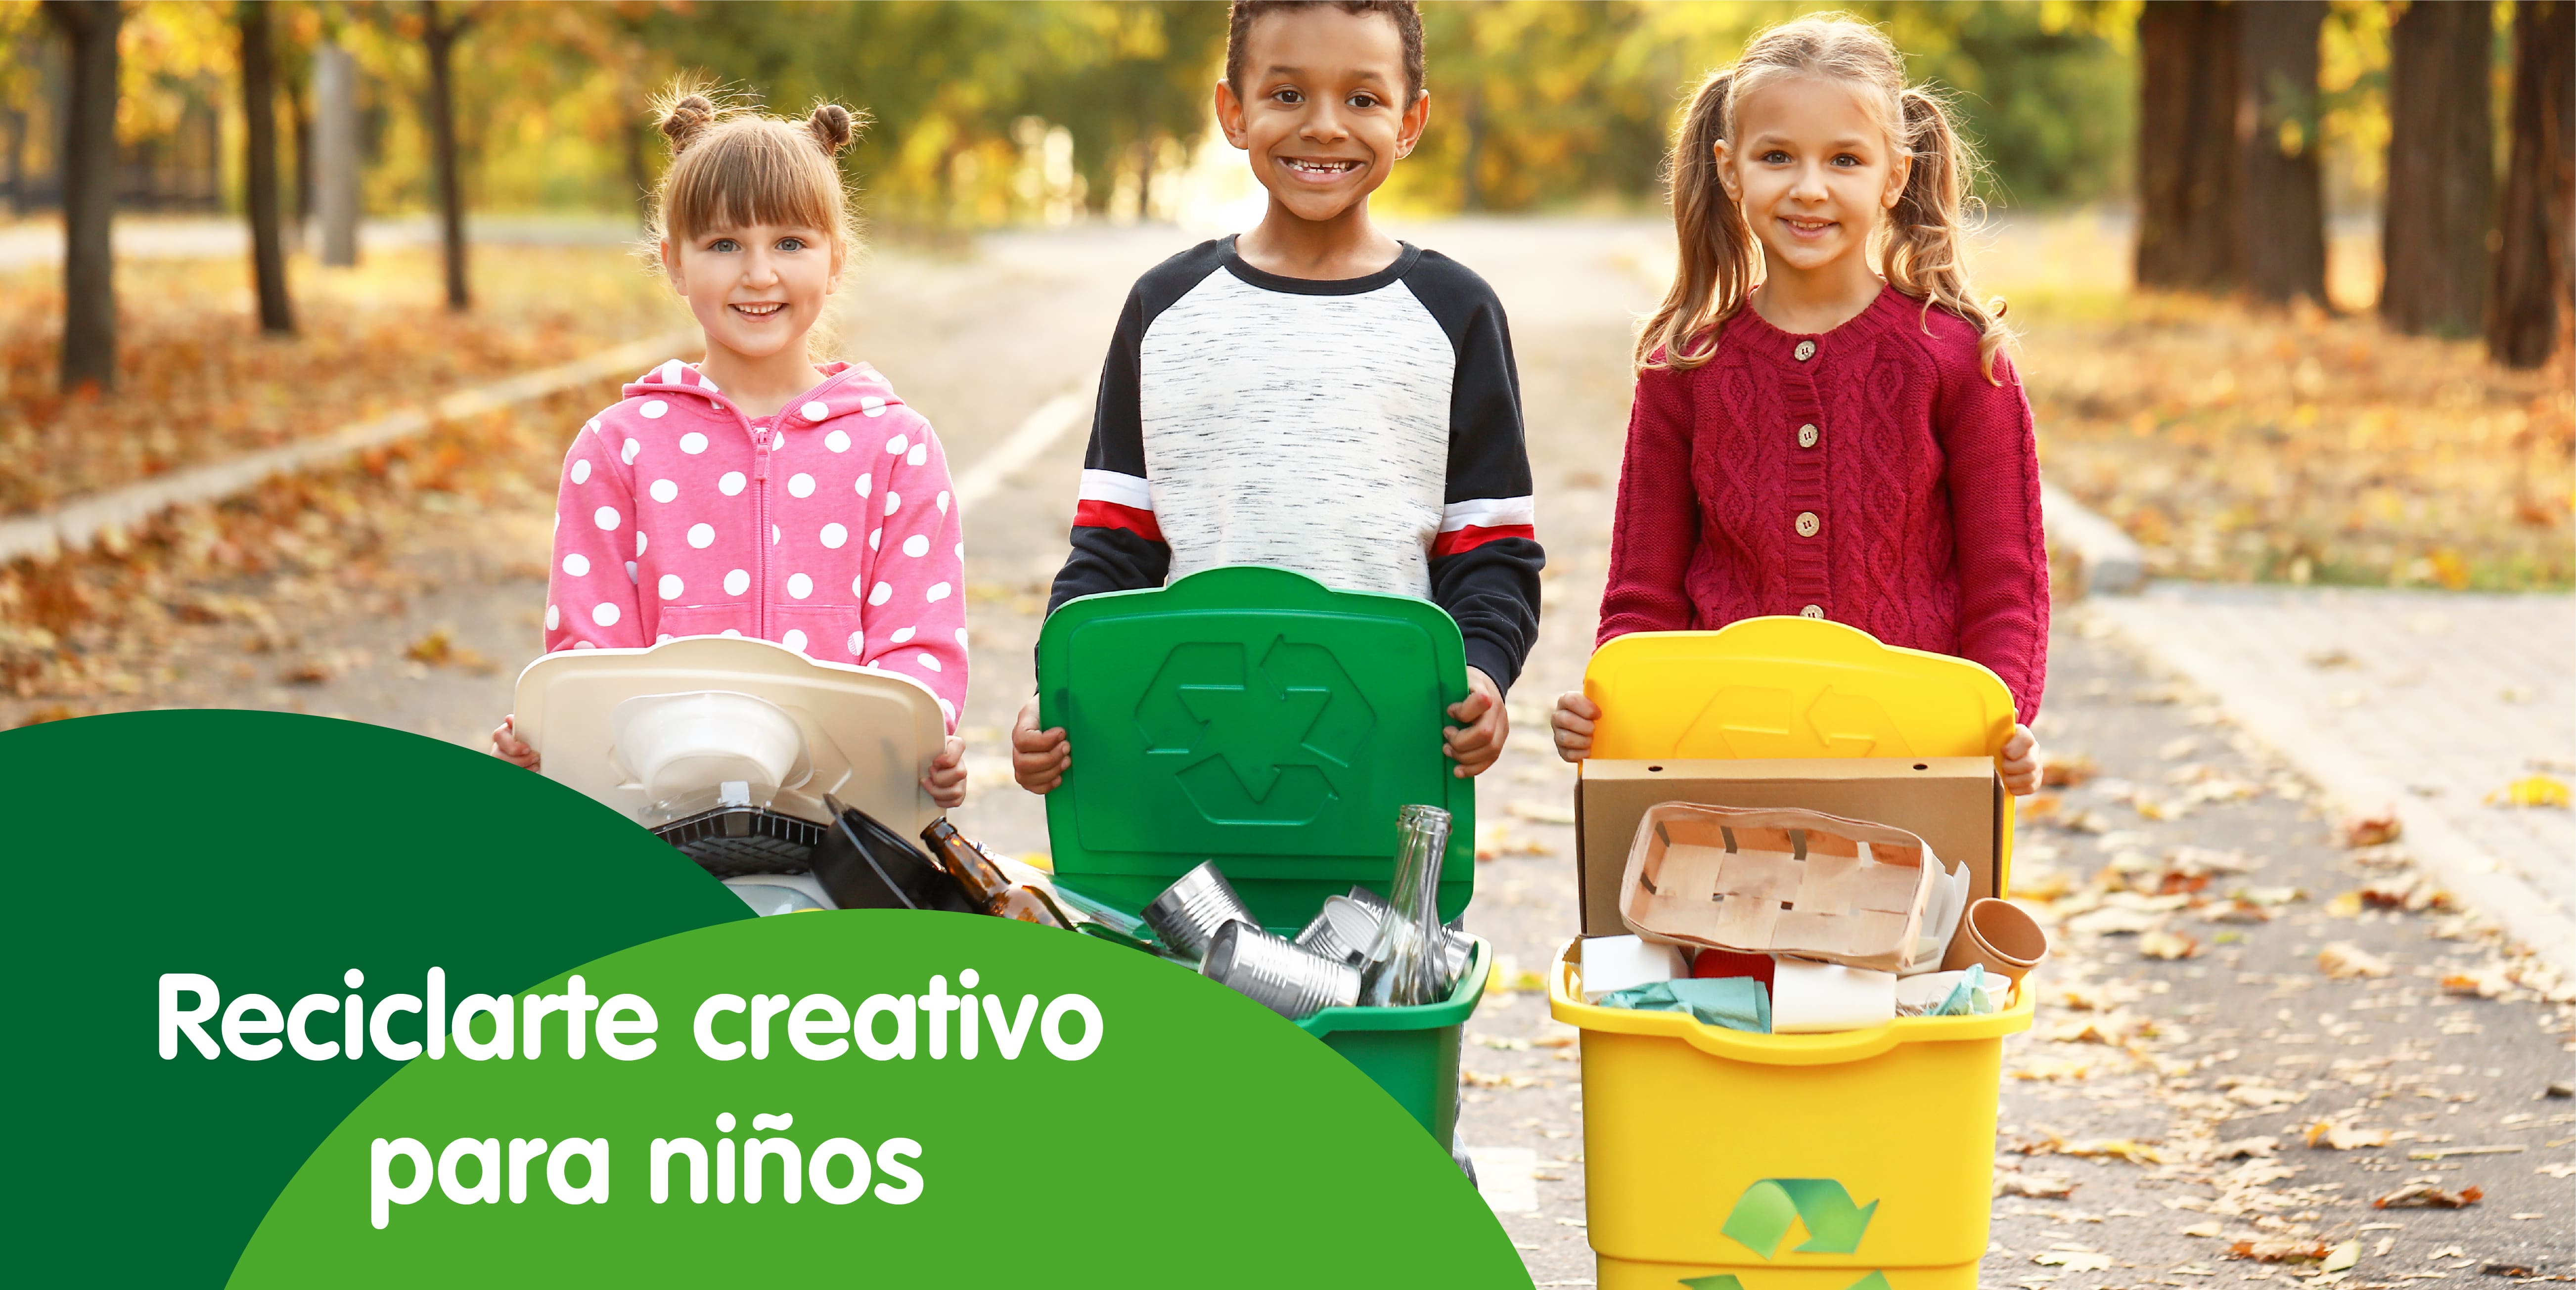 Reciclarte creativo para niños